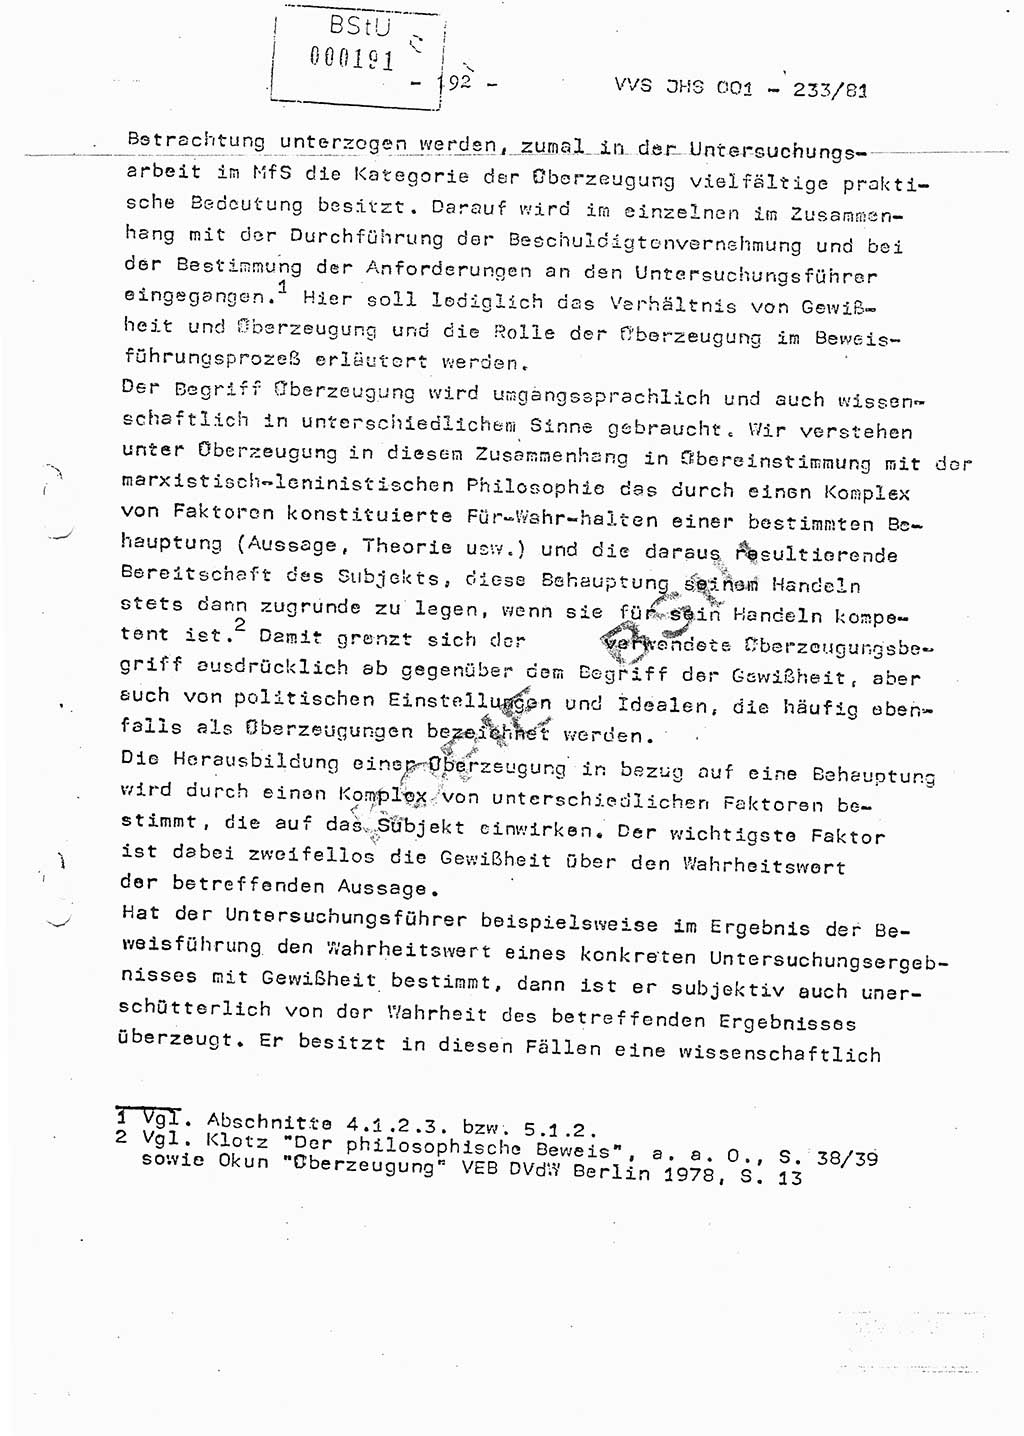 Dissertation Oberstleutnant Horst Zank (JHS), Oberstleutnant Dr. Karl-Heinz Knoblauch (JHS), Oberstleutnant Gustav-Adolf Kowalewski (HA Ⅸ), Oberstleutnant Wolfgang Plötner (HA Ⅸ), Ministerium für Staatssicherheit (MfS) [Deutsche Demokratische Republik (DDR)], Juristische Hochschule (JHS), Vertrauliche Verschlußsache (VVS) o001-233/81, Potsdam 1981, Blatt 192 (Diss. MfS DDR JHS VVS o001-233/81 1981, Bl. 192)